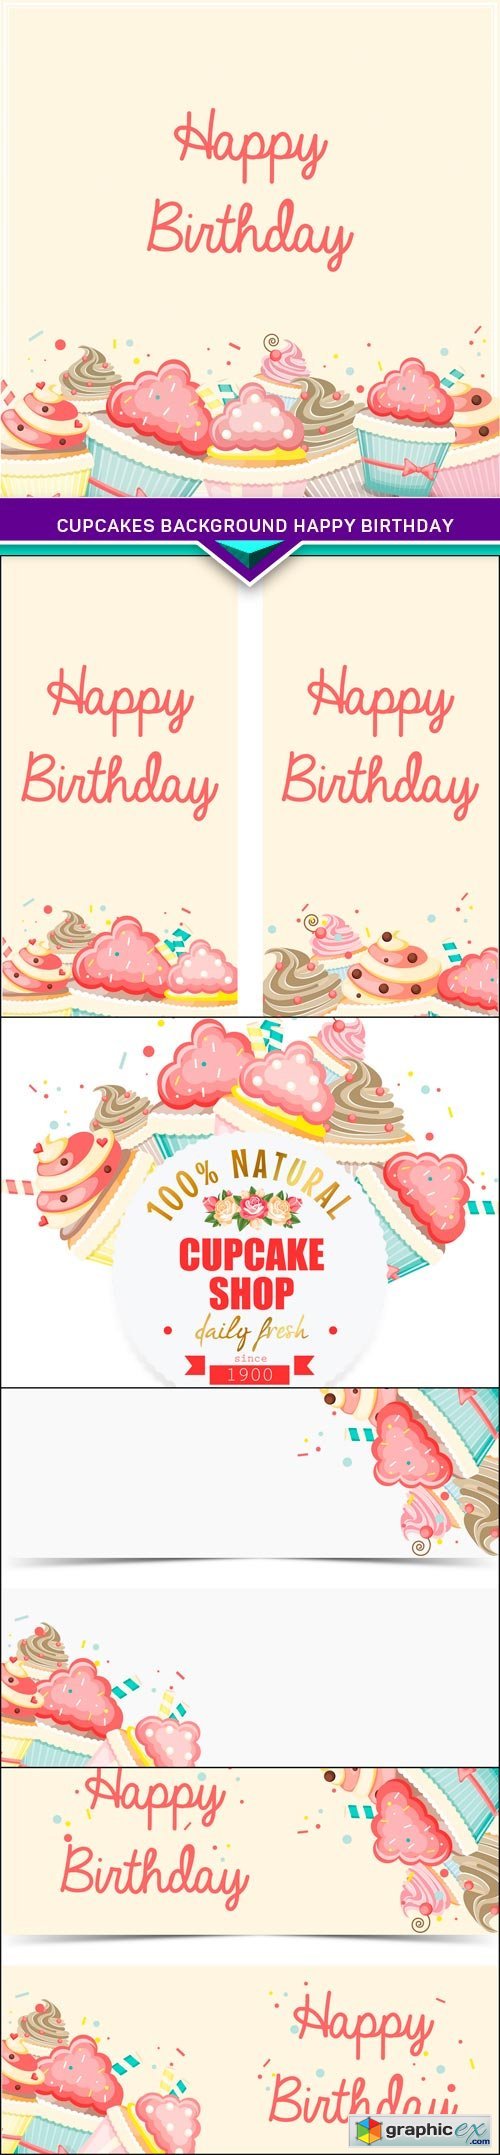 Cupcakes background Happy Birthday 5X EPS